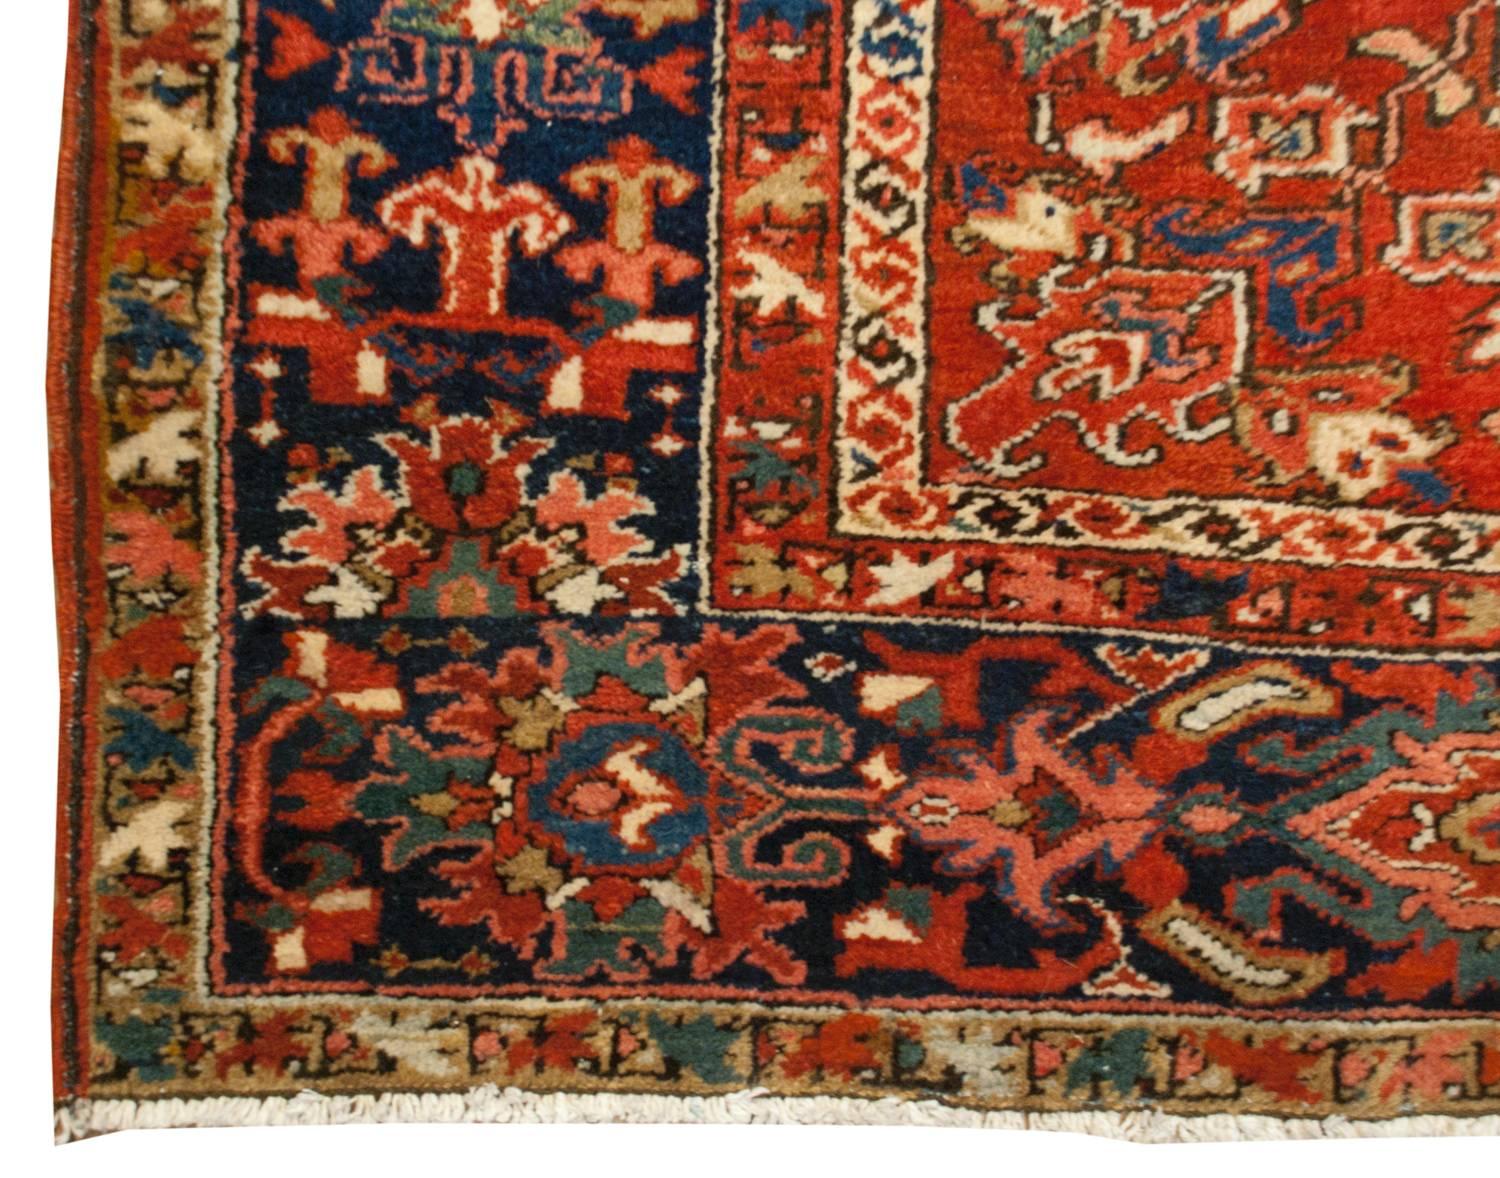 Un étonnant tapis persan Heriz du début du 20e siècle au design inhabituel, dépourvu du grand médaillon central traditionnel. Il comprend plutôt un petit médaillon indigo sur un motif floral et viticole multicolore merveilleusement tissé en miroir